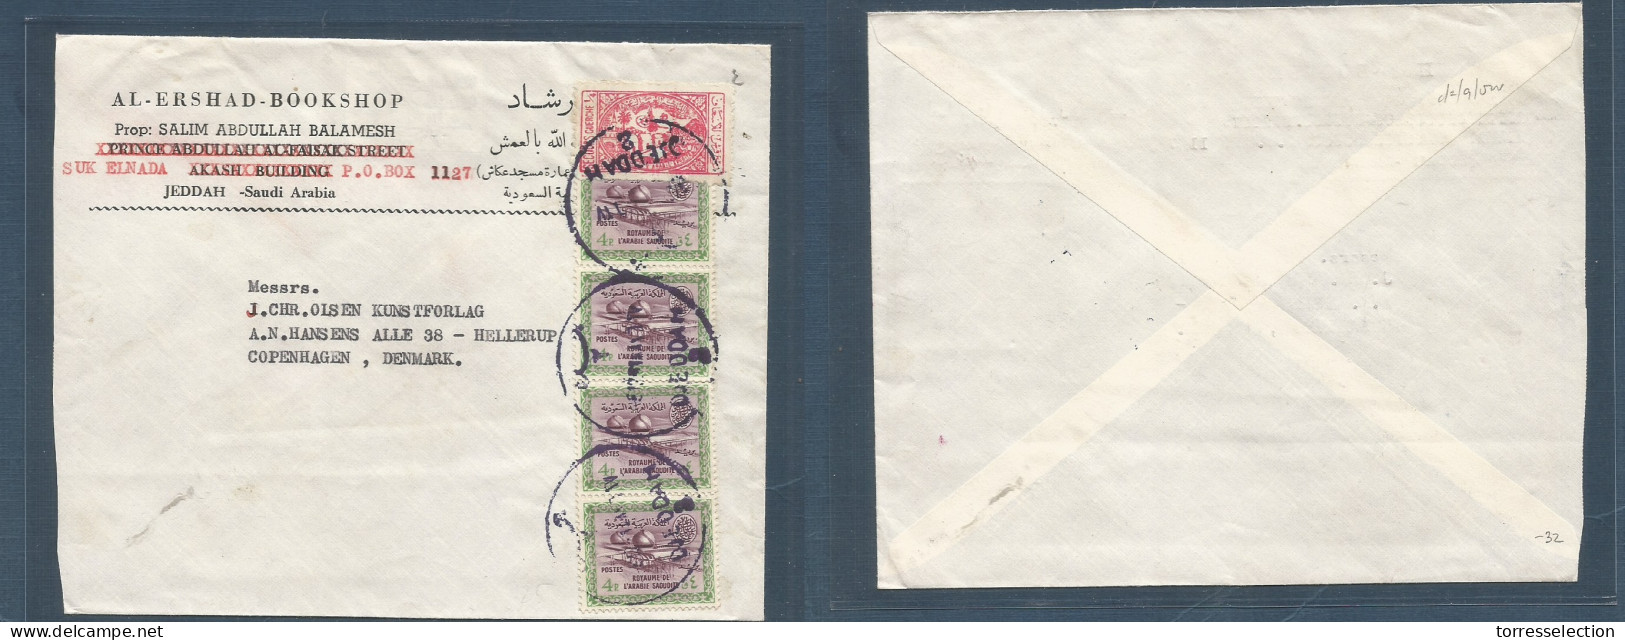 SAUDI ARABIA. 1951. Jeddah - Denmark, Cph. Comercial Multifkd Env Including Benefic Label, Tied Cds. Fine. XSALE. - Saudi Arabia